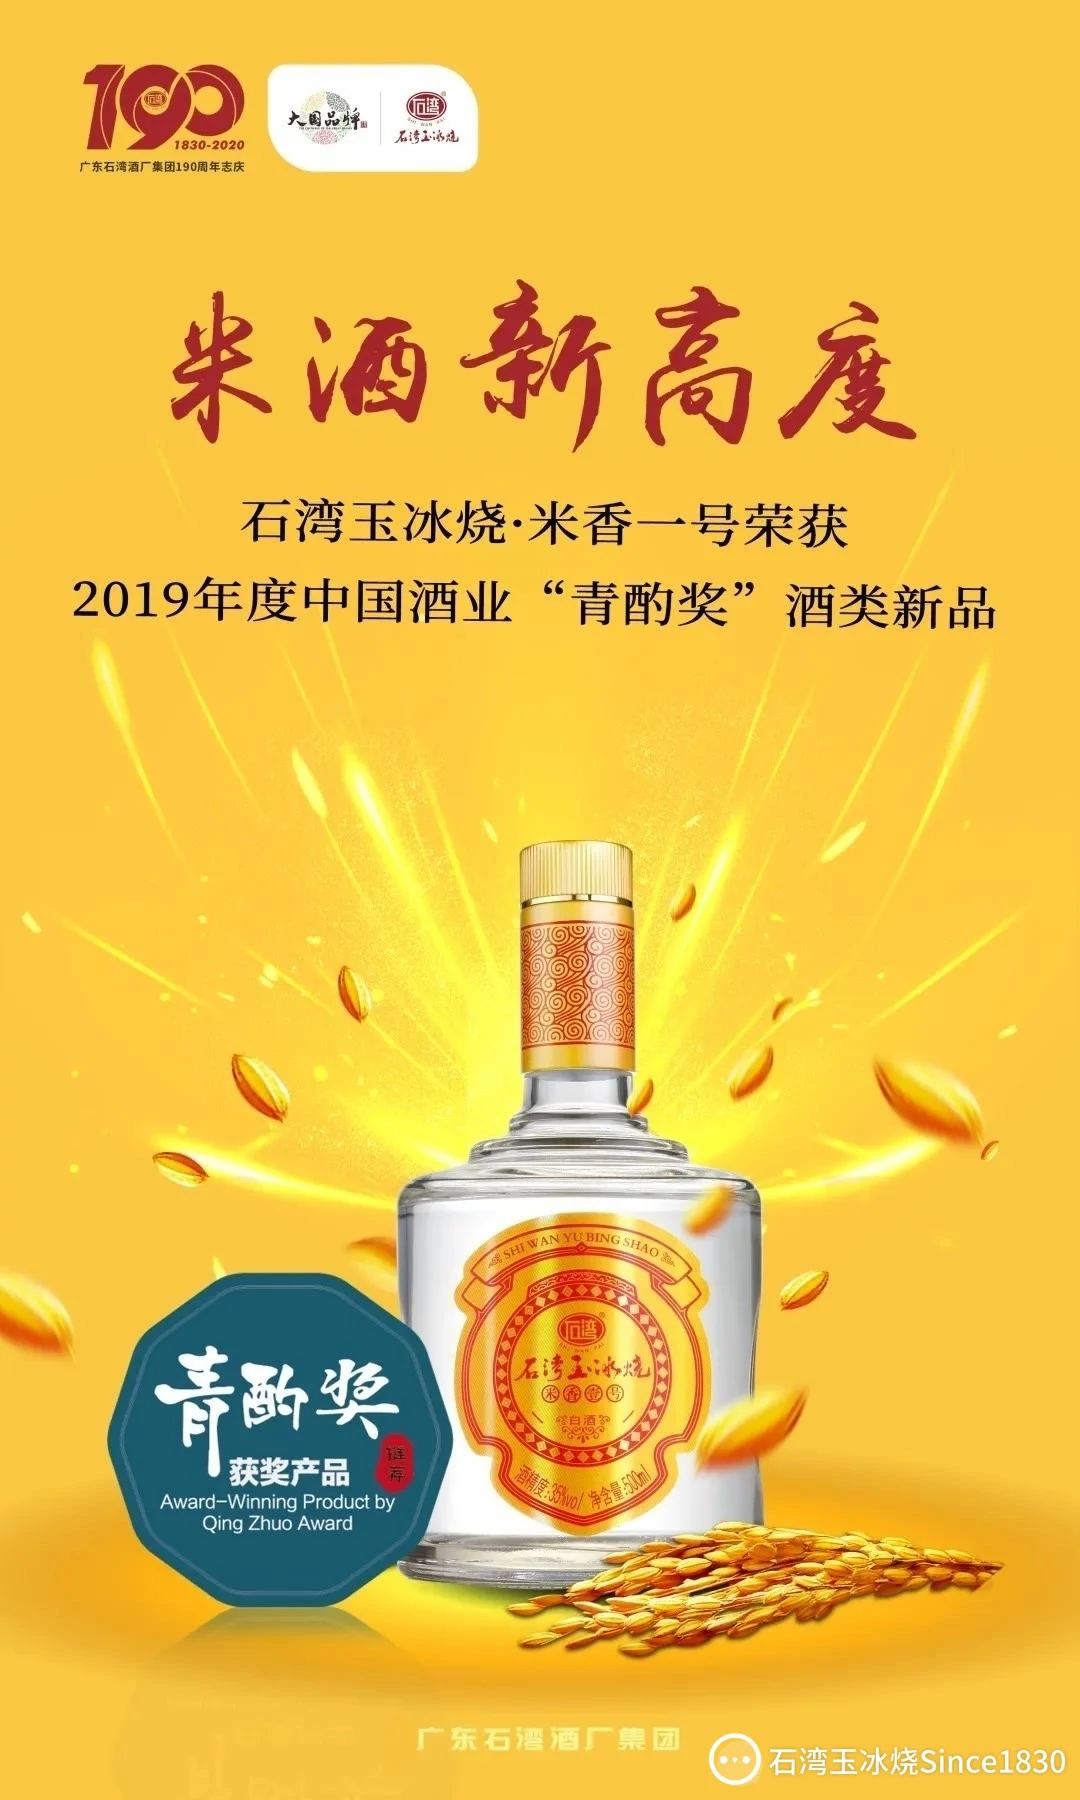 热点 | 石湾玉冰烧·米香一号荣获2019年度“青酌奖”酒类新品奖